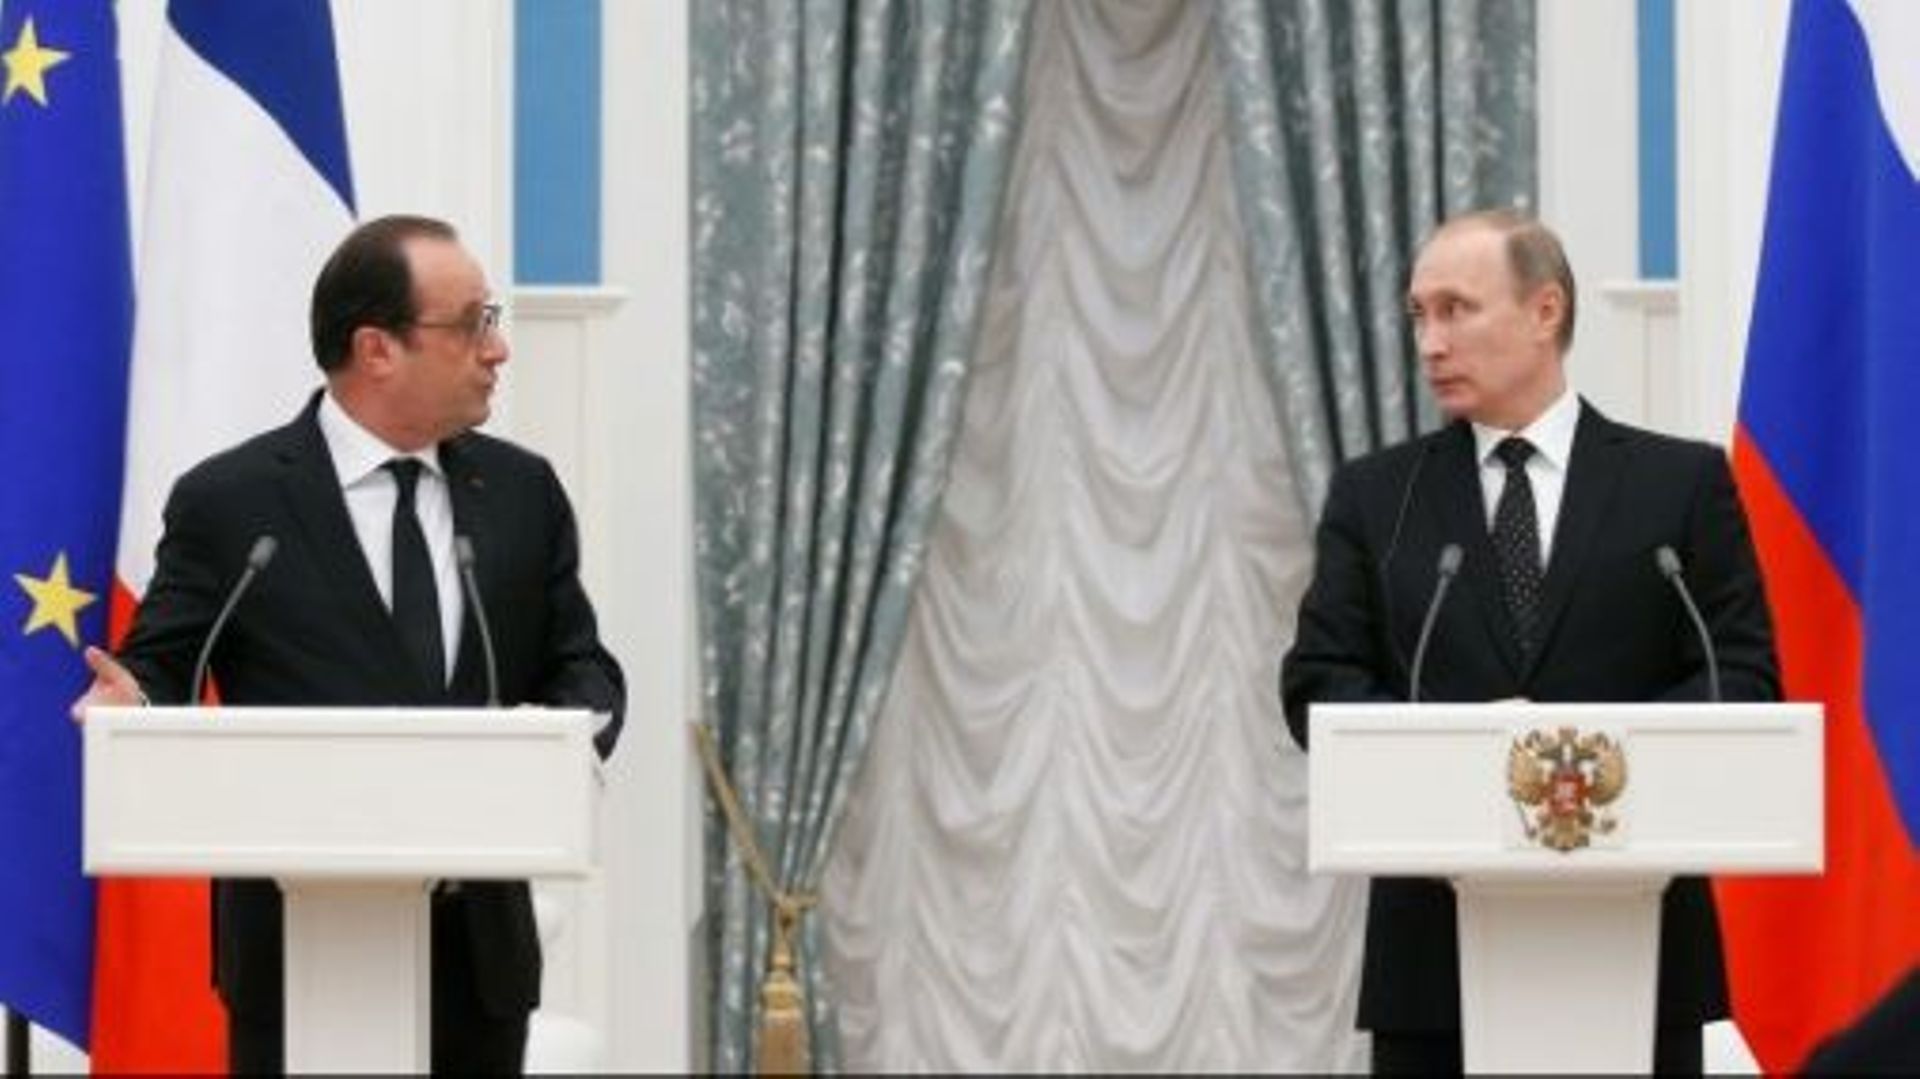 Le président français François Hollande (g) et son homologue russe Vladimir Poutine, le 26 novembre 2015 à Moscou